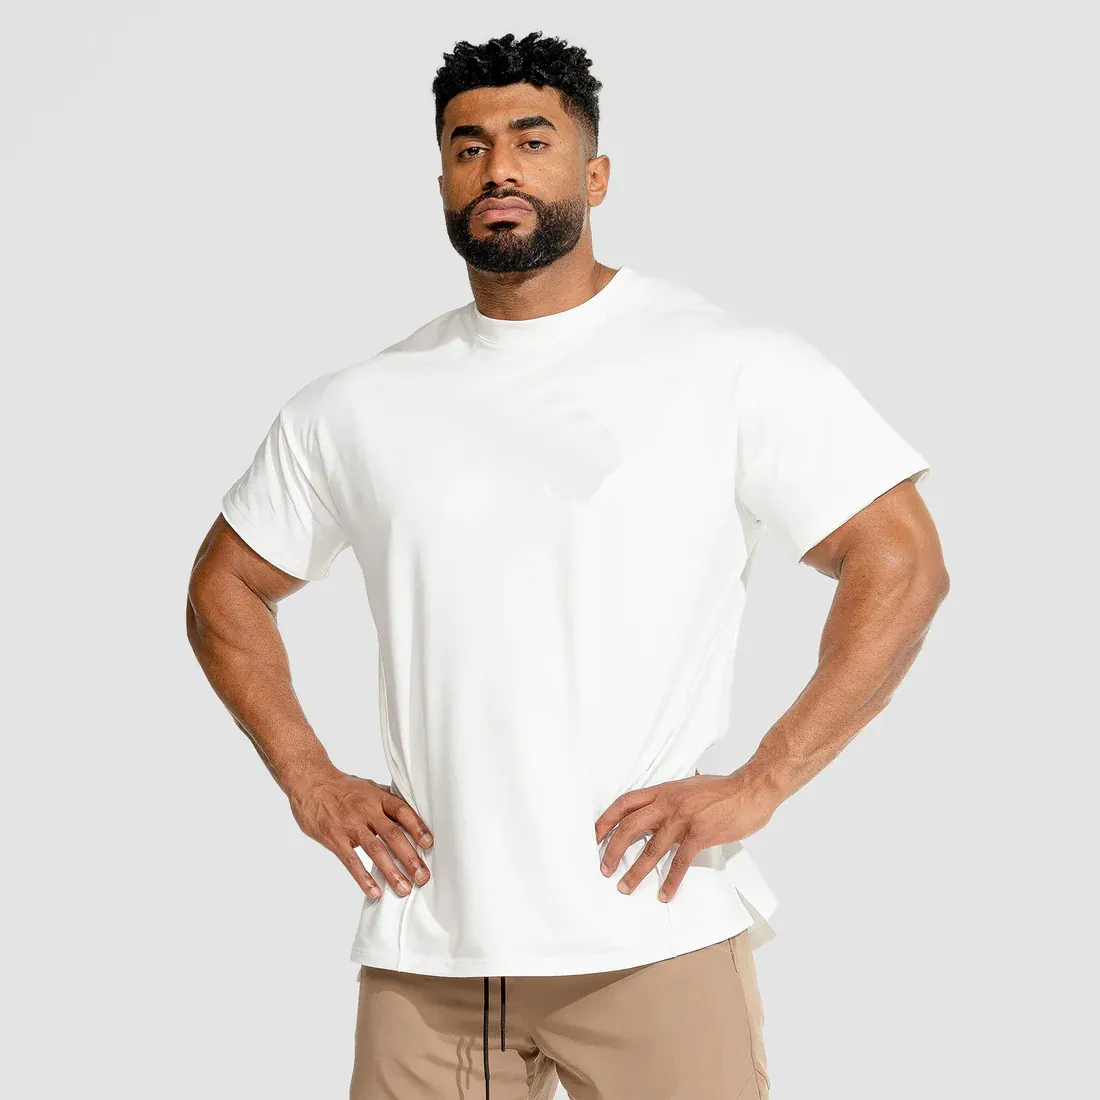 2023 venta al por mayor culturismo entrenamiento muscular Fitness gimnasio camisetas Athletic Stringer sólido gimnasio desgaste hombres camisetas Fitness ropa